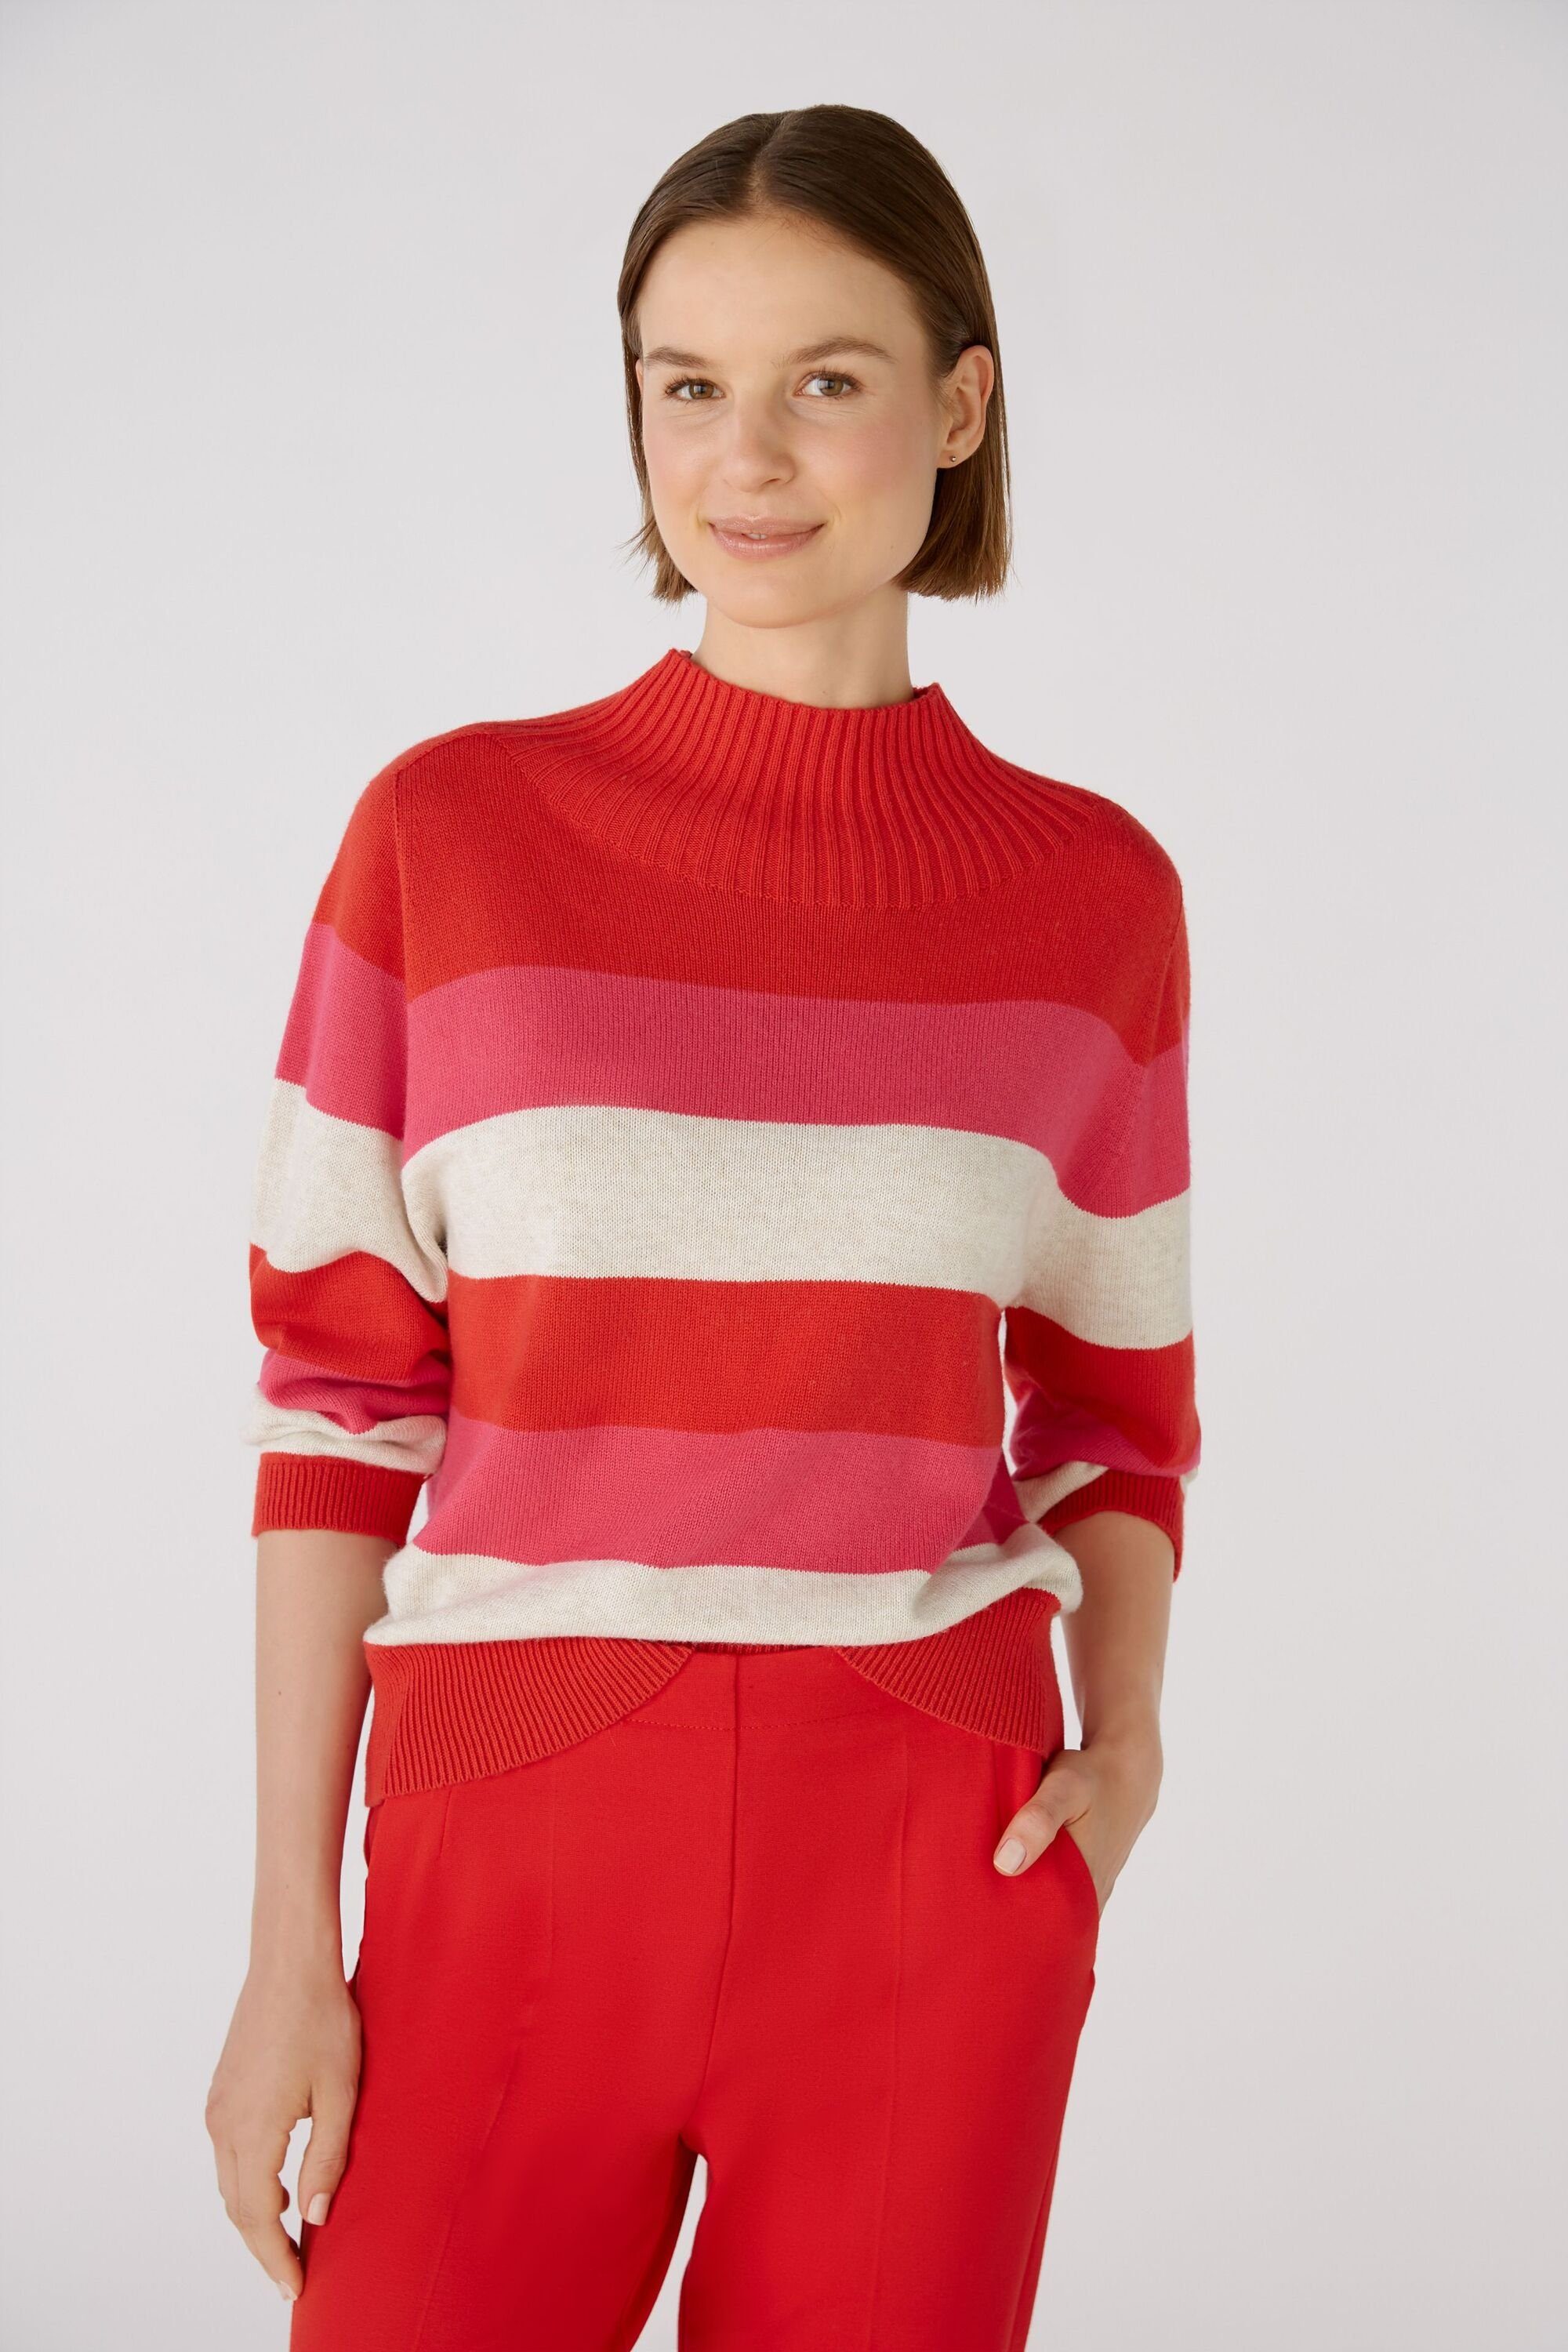 Oui Strickpullover Pullover mit rose red Baumwoll- und Viskoseanteil